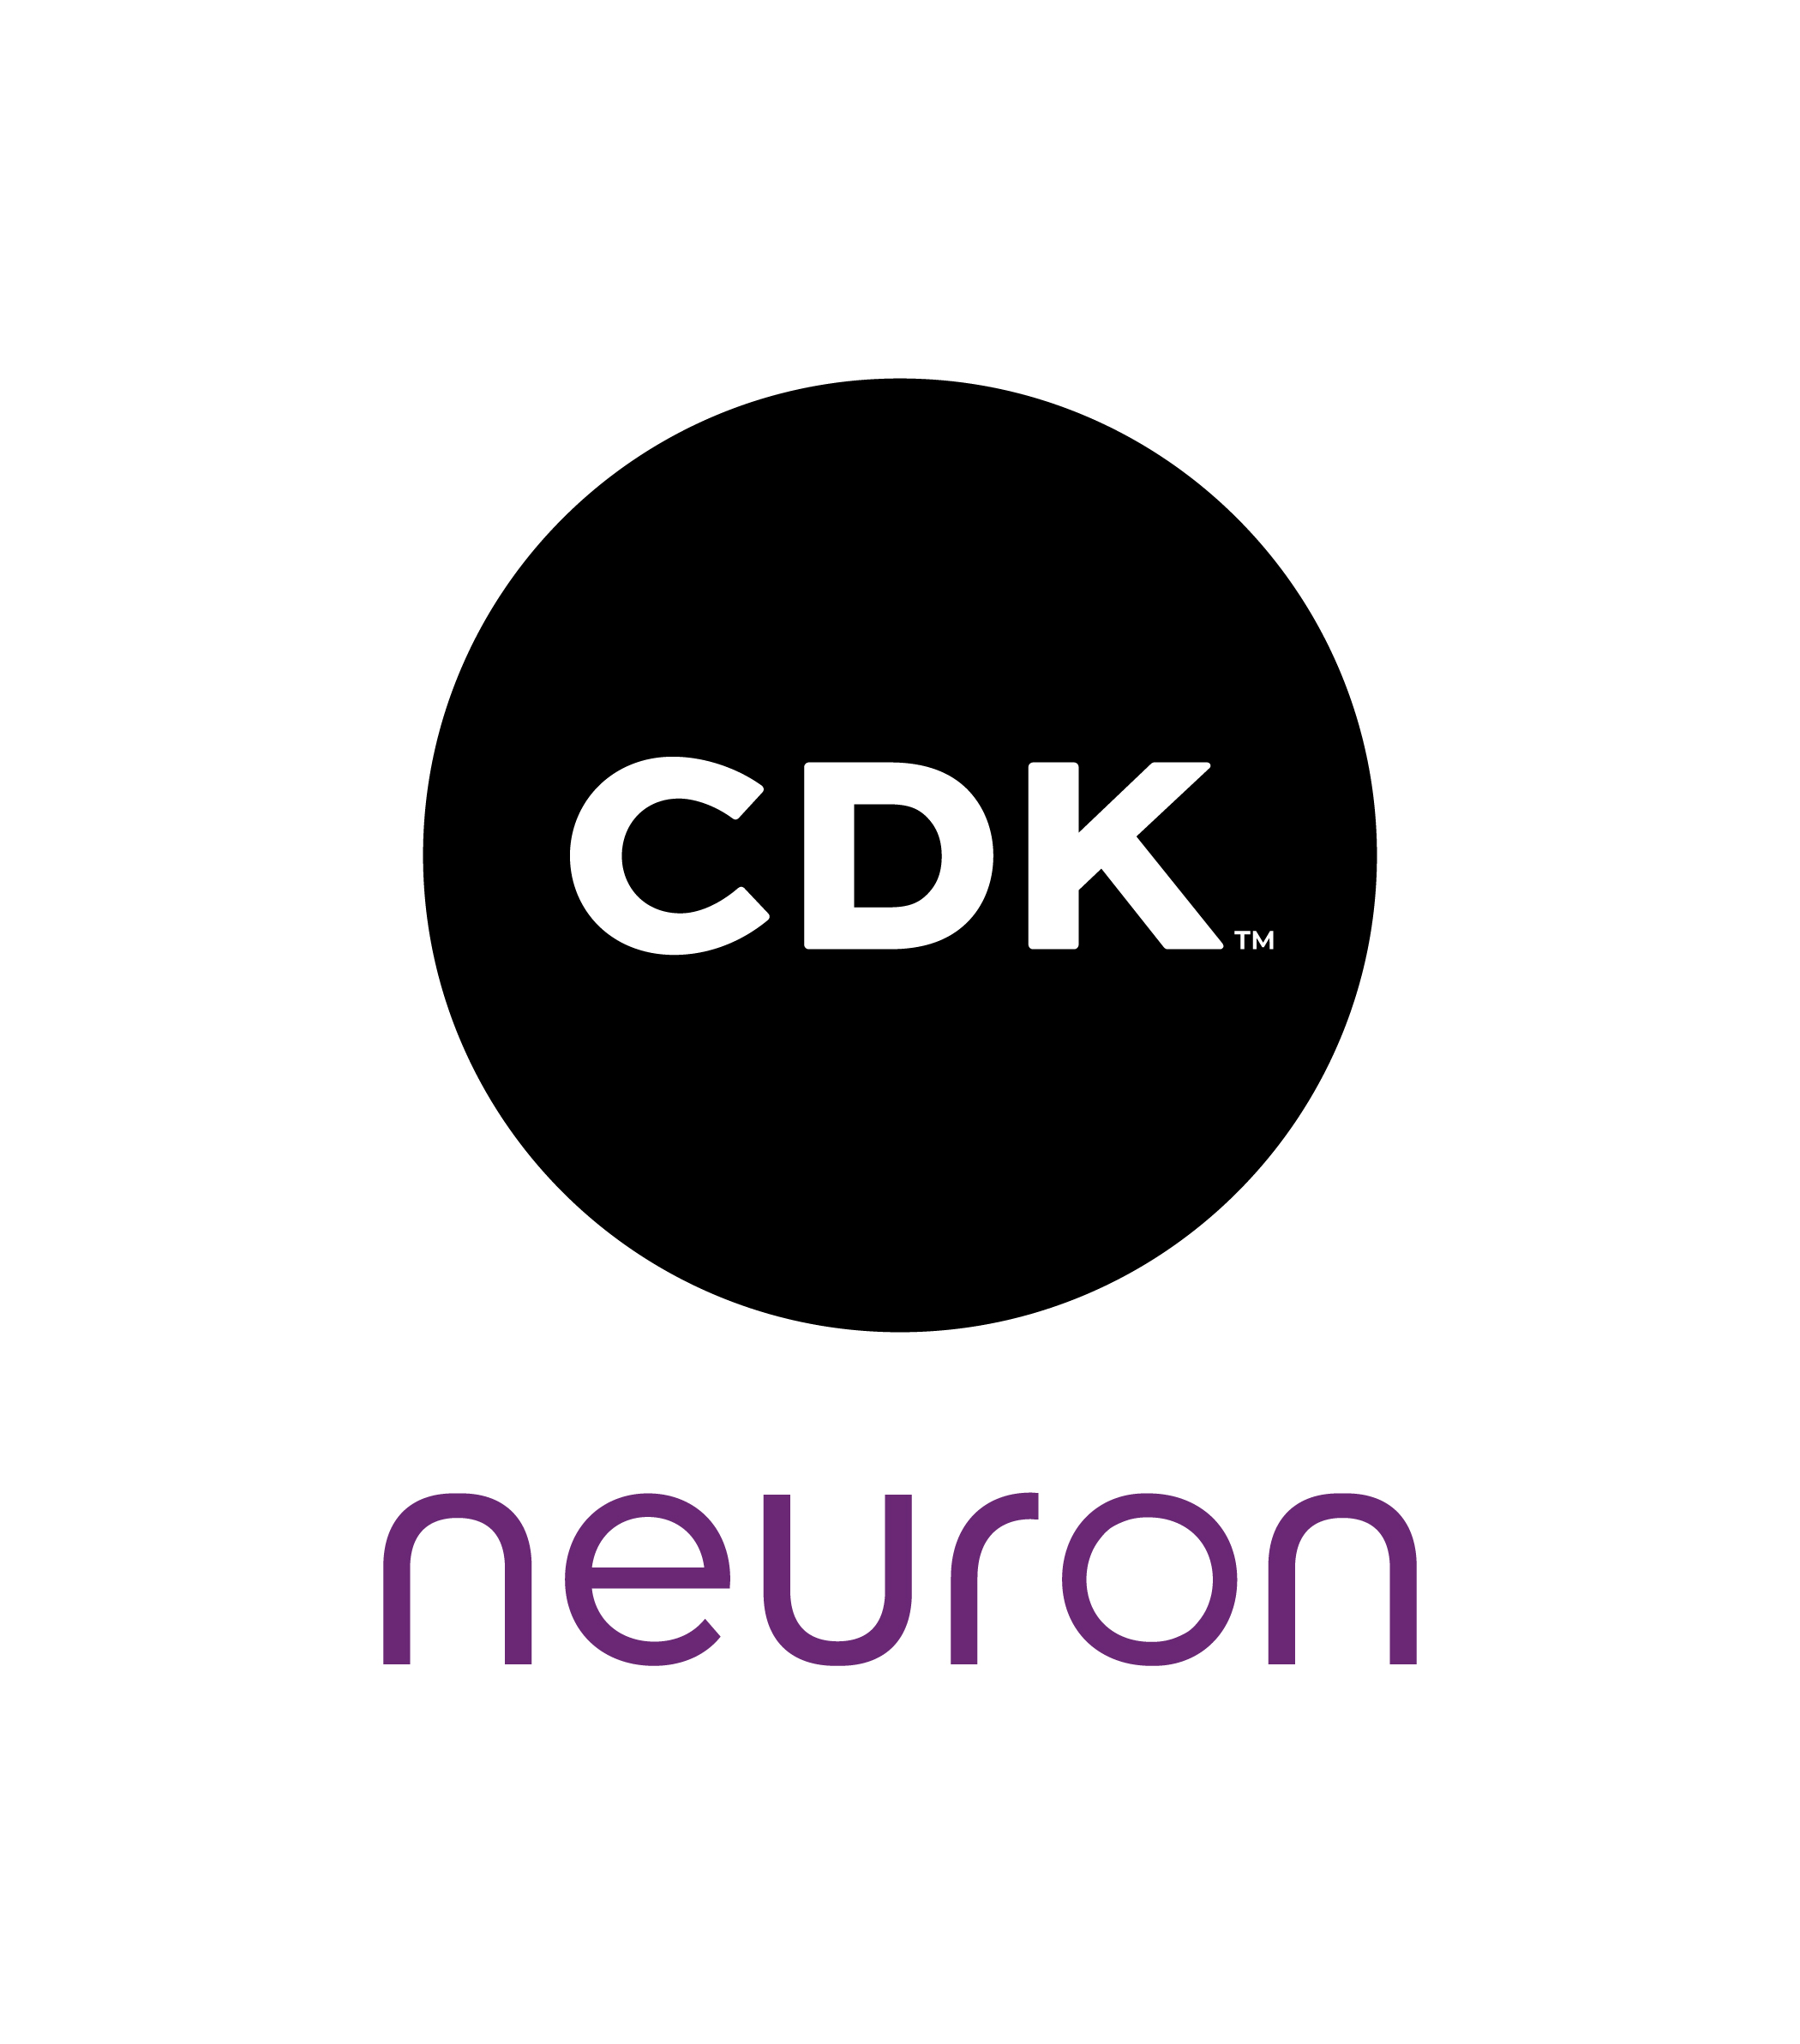 Neuron team at CDK Global